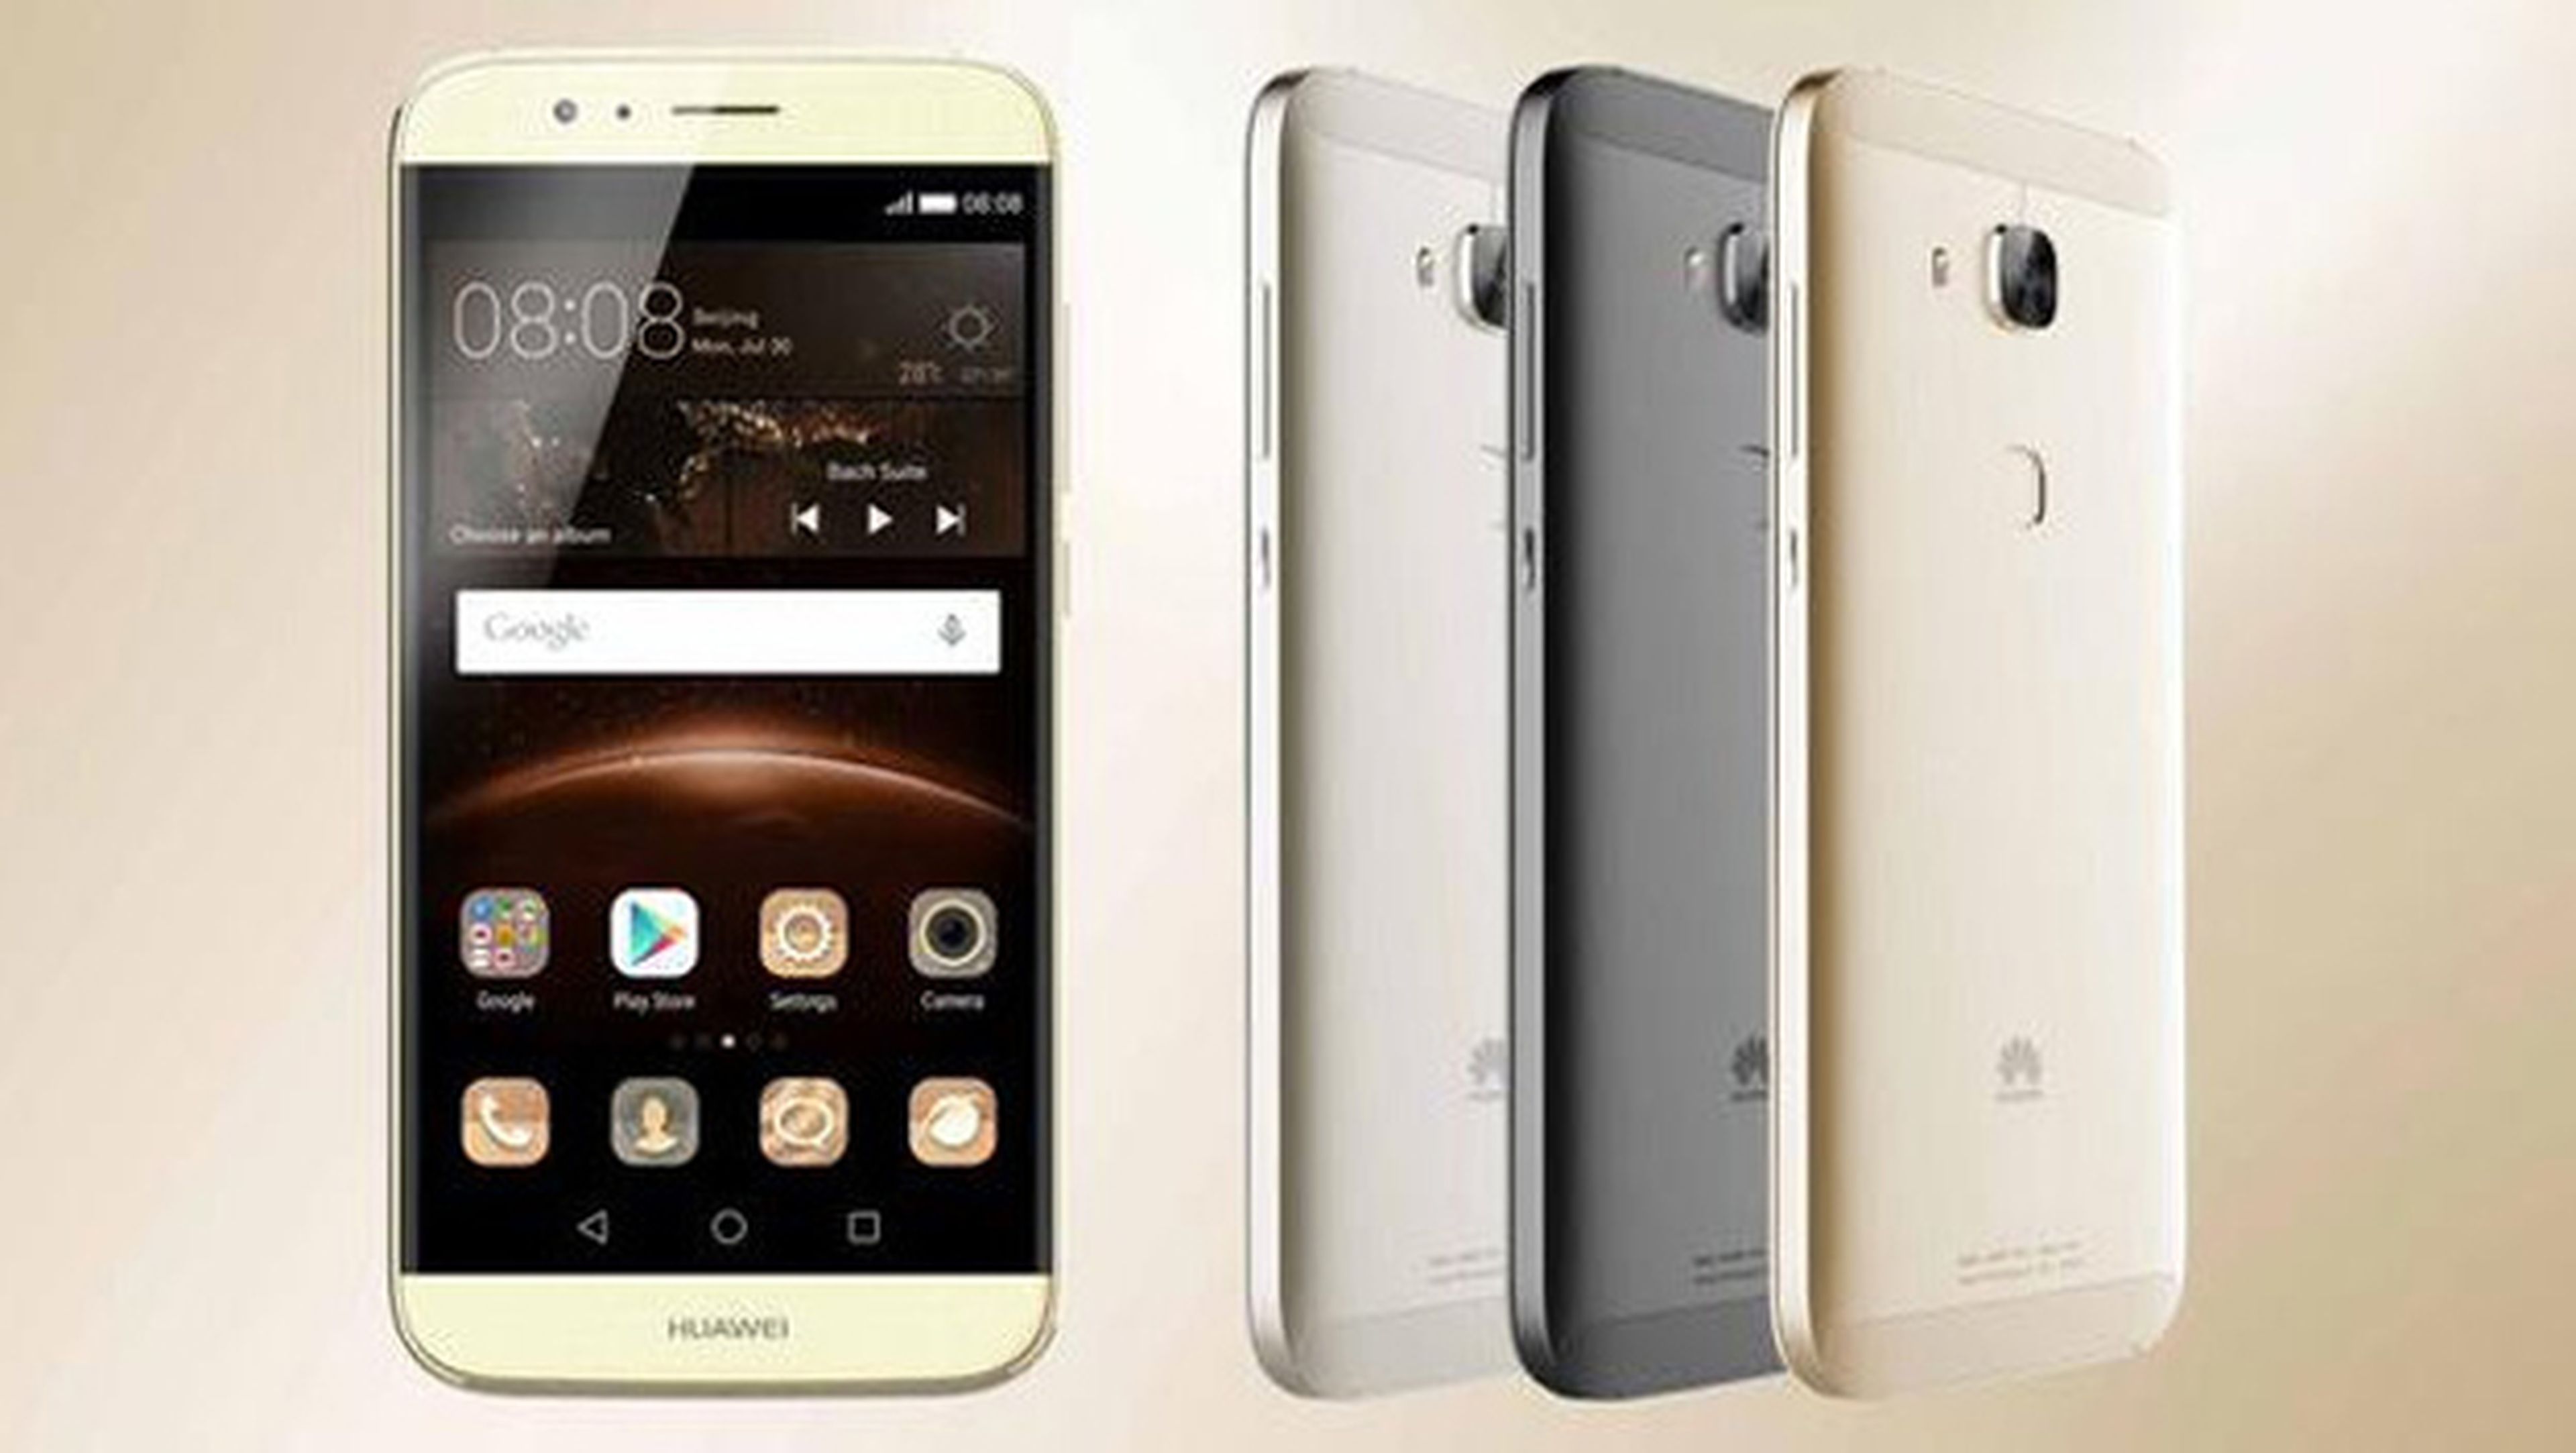 Huawei G8 oferta móviles huawei